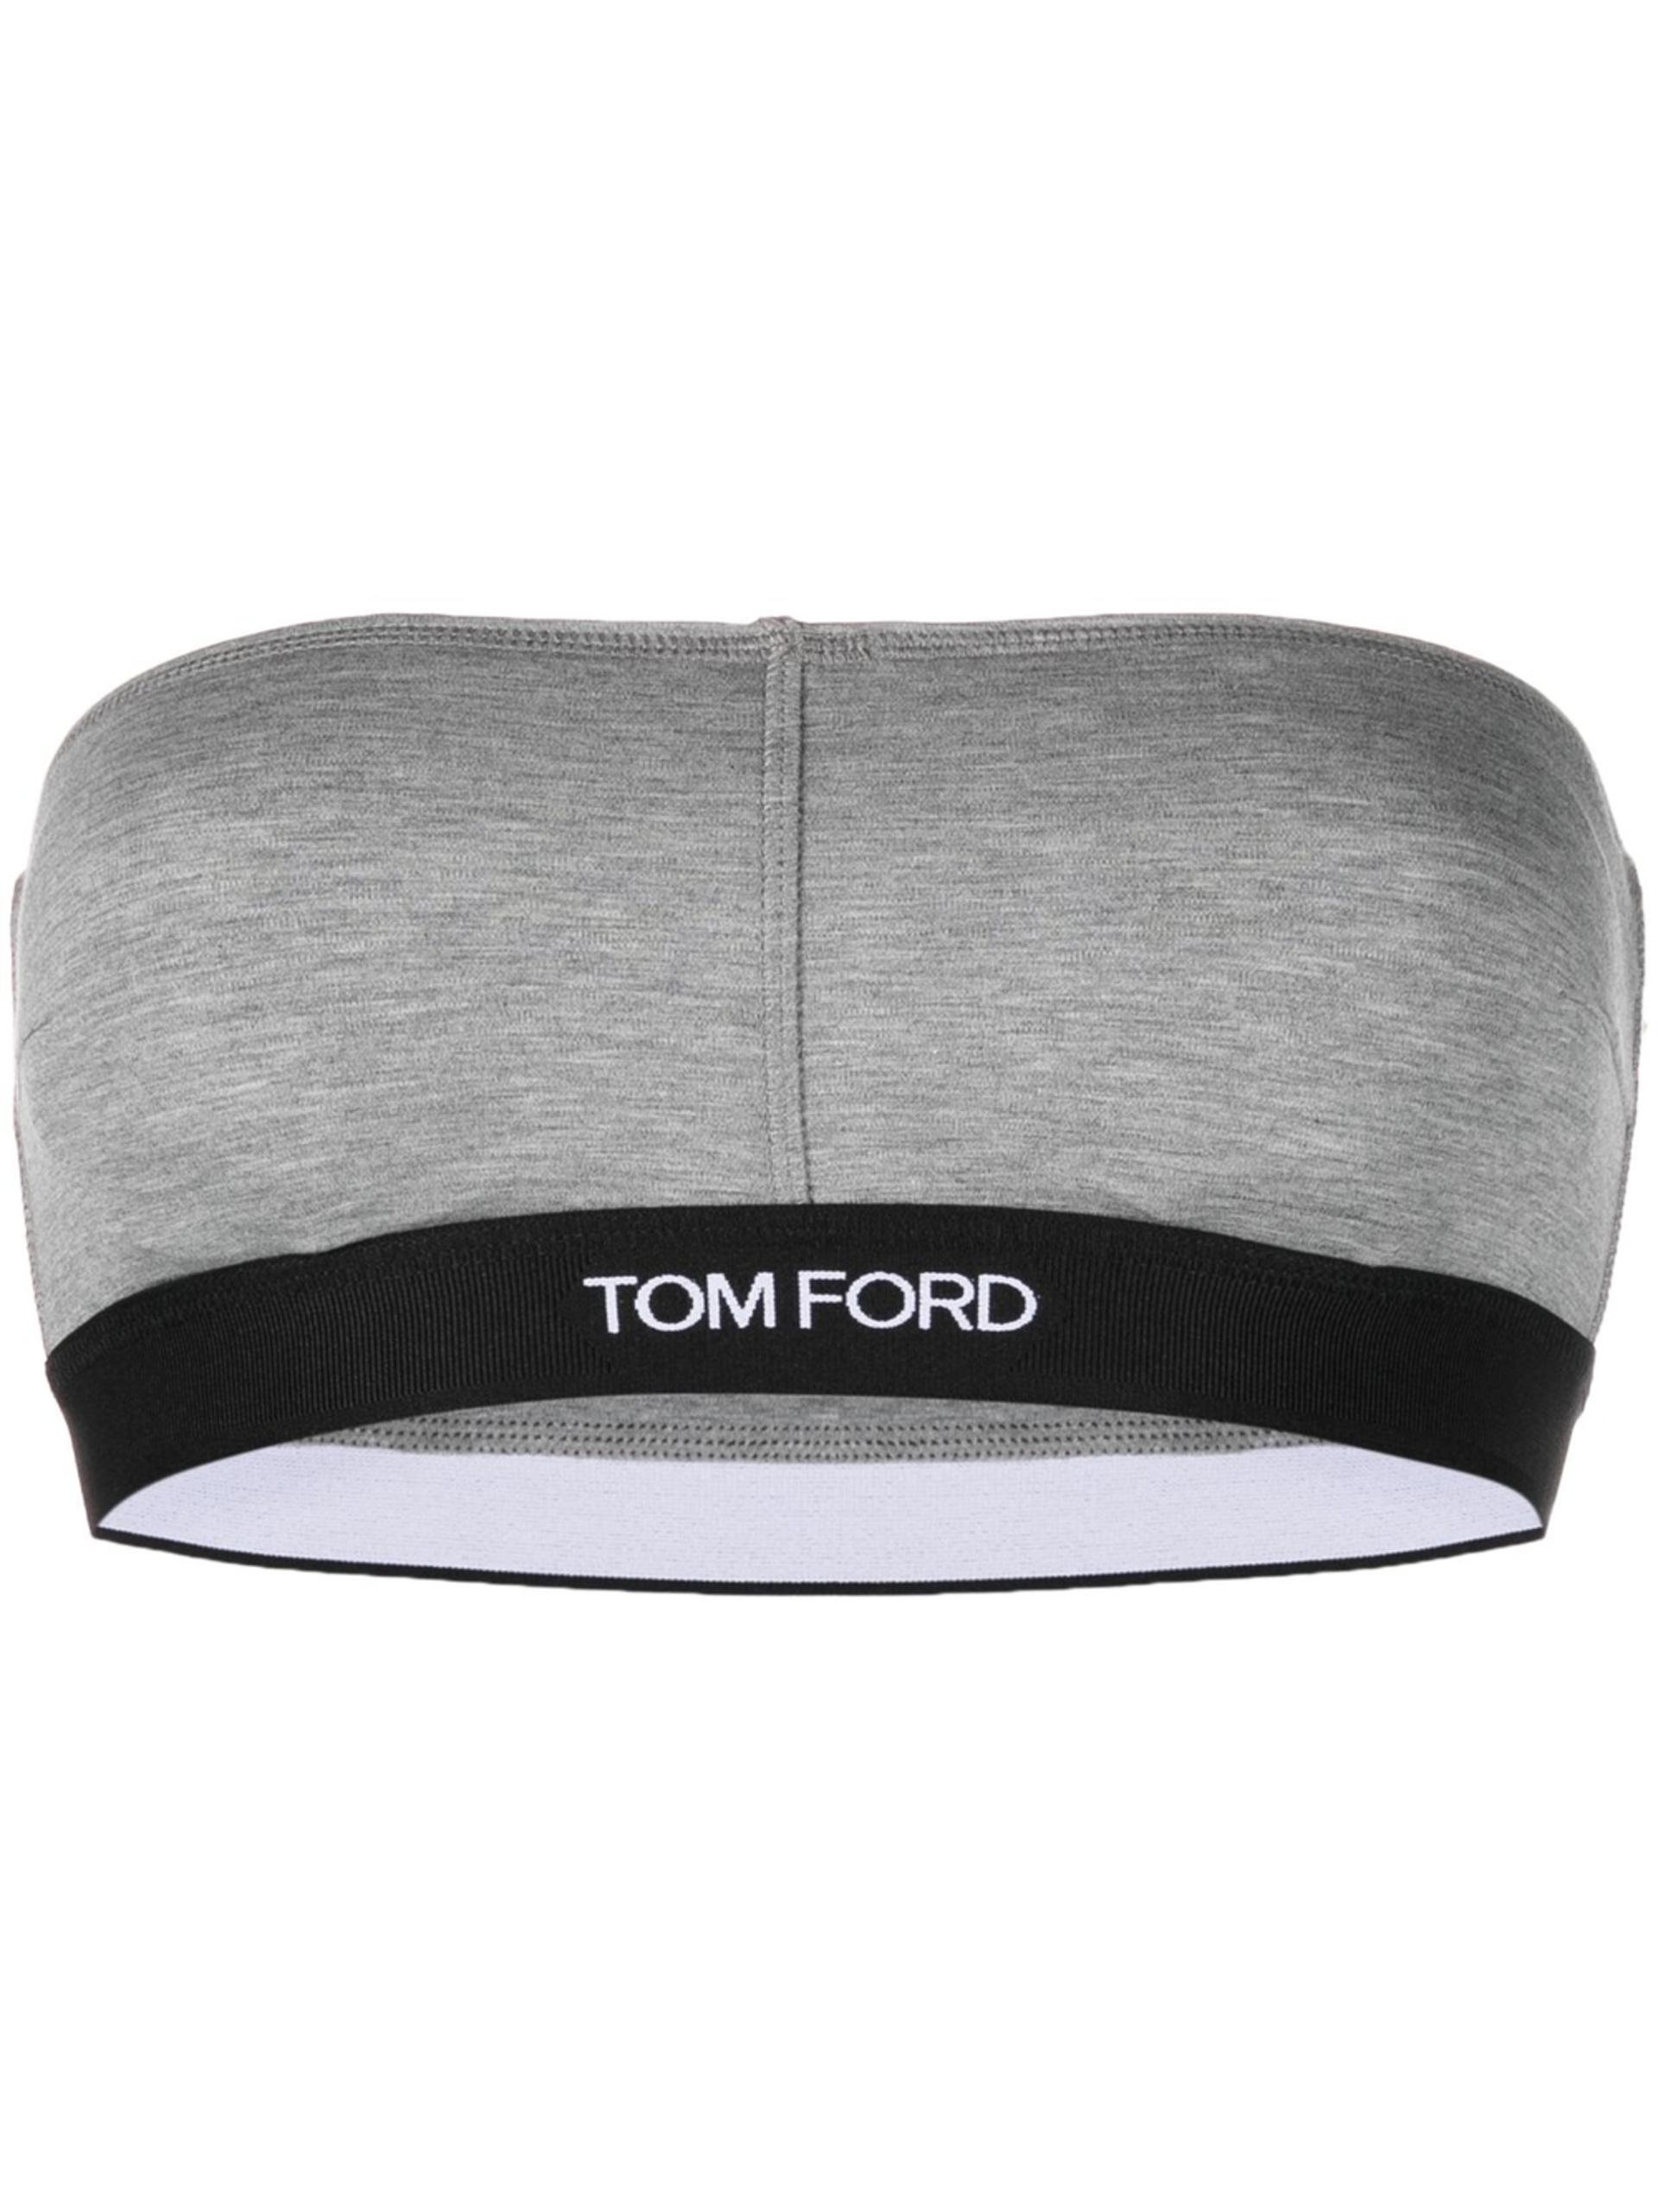 Tom Ford Logo Bandeau Bra in Gray | Lyst